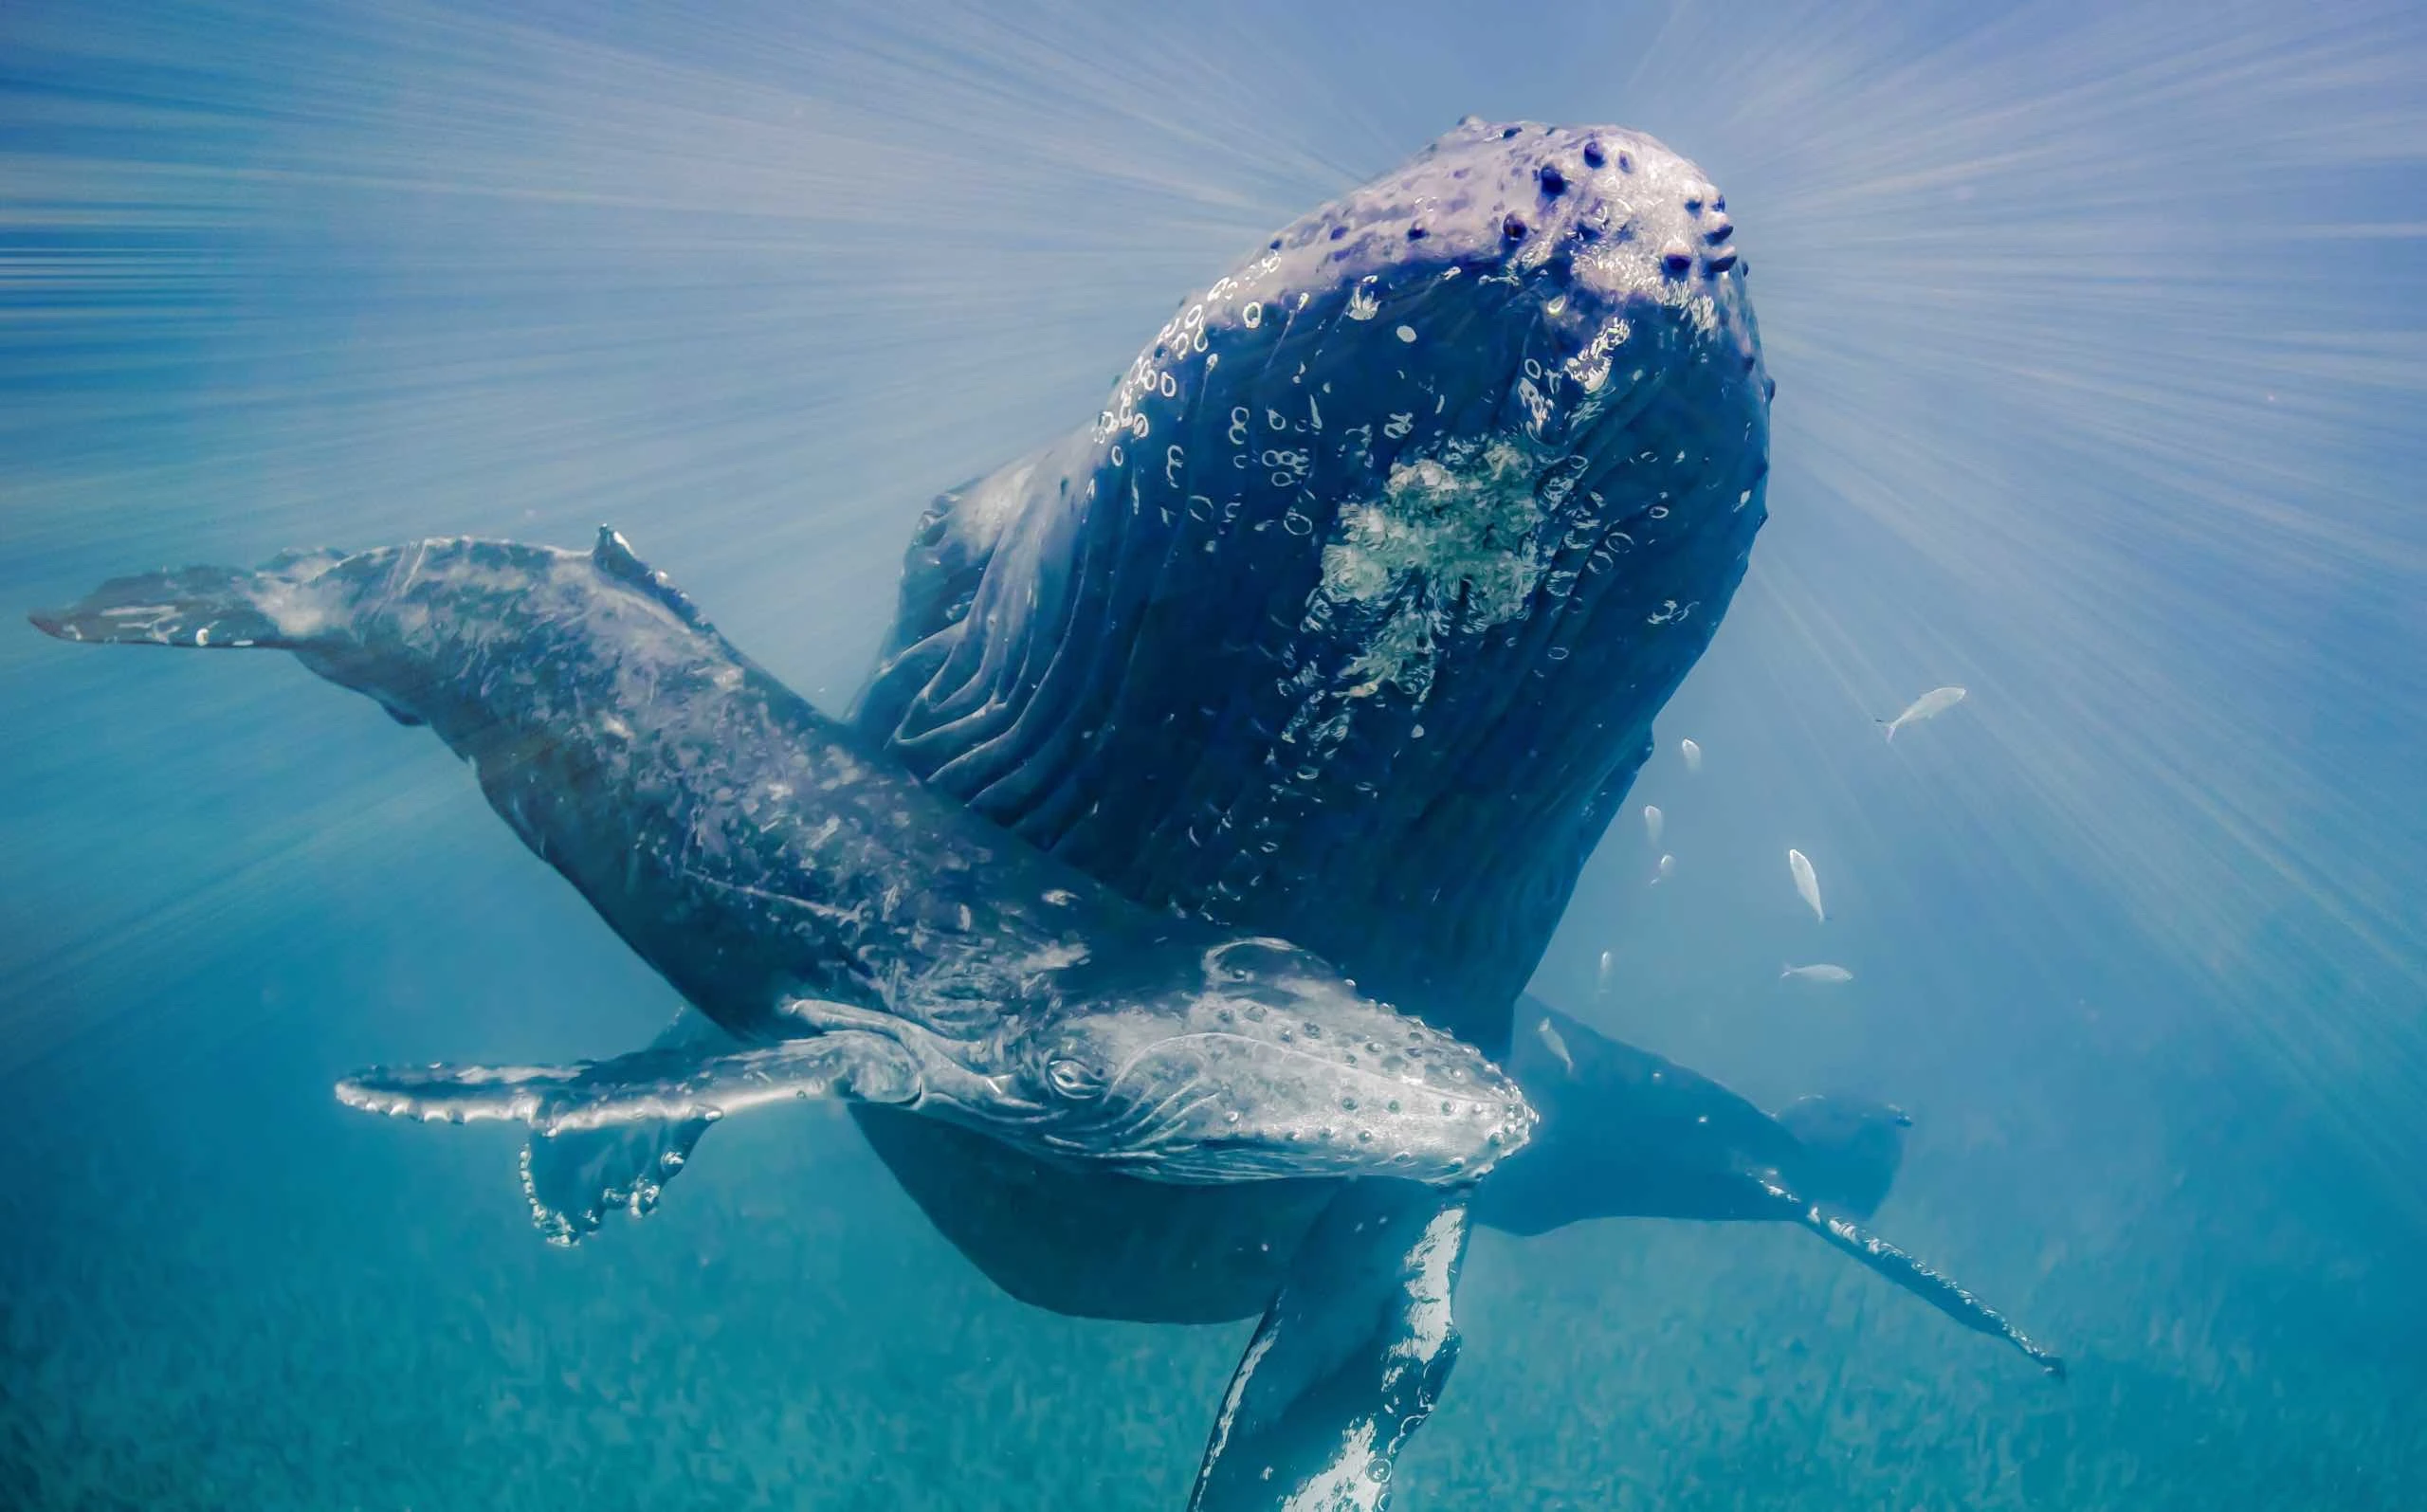 Dünyanın En Büyük Deniz Canlısı: Mavi Balına